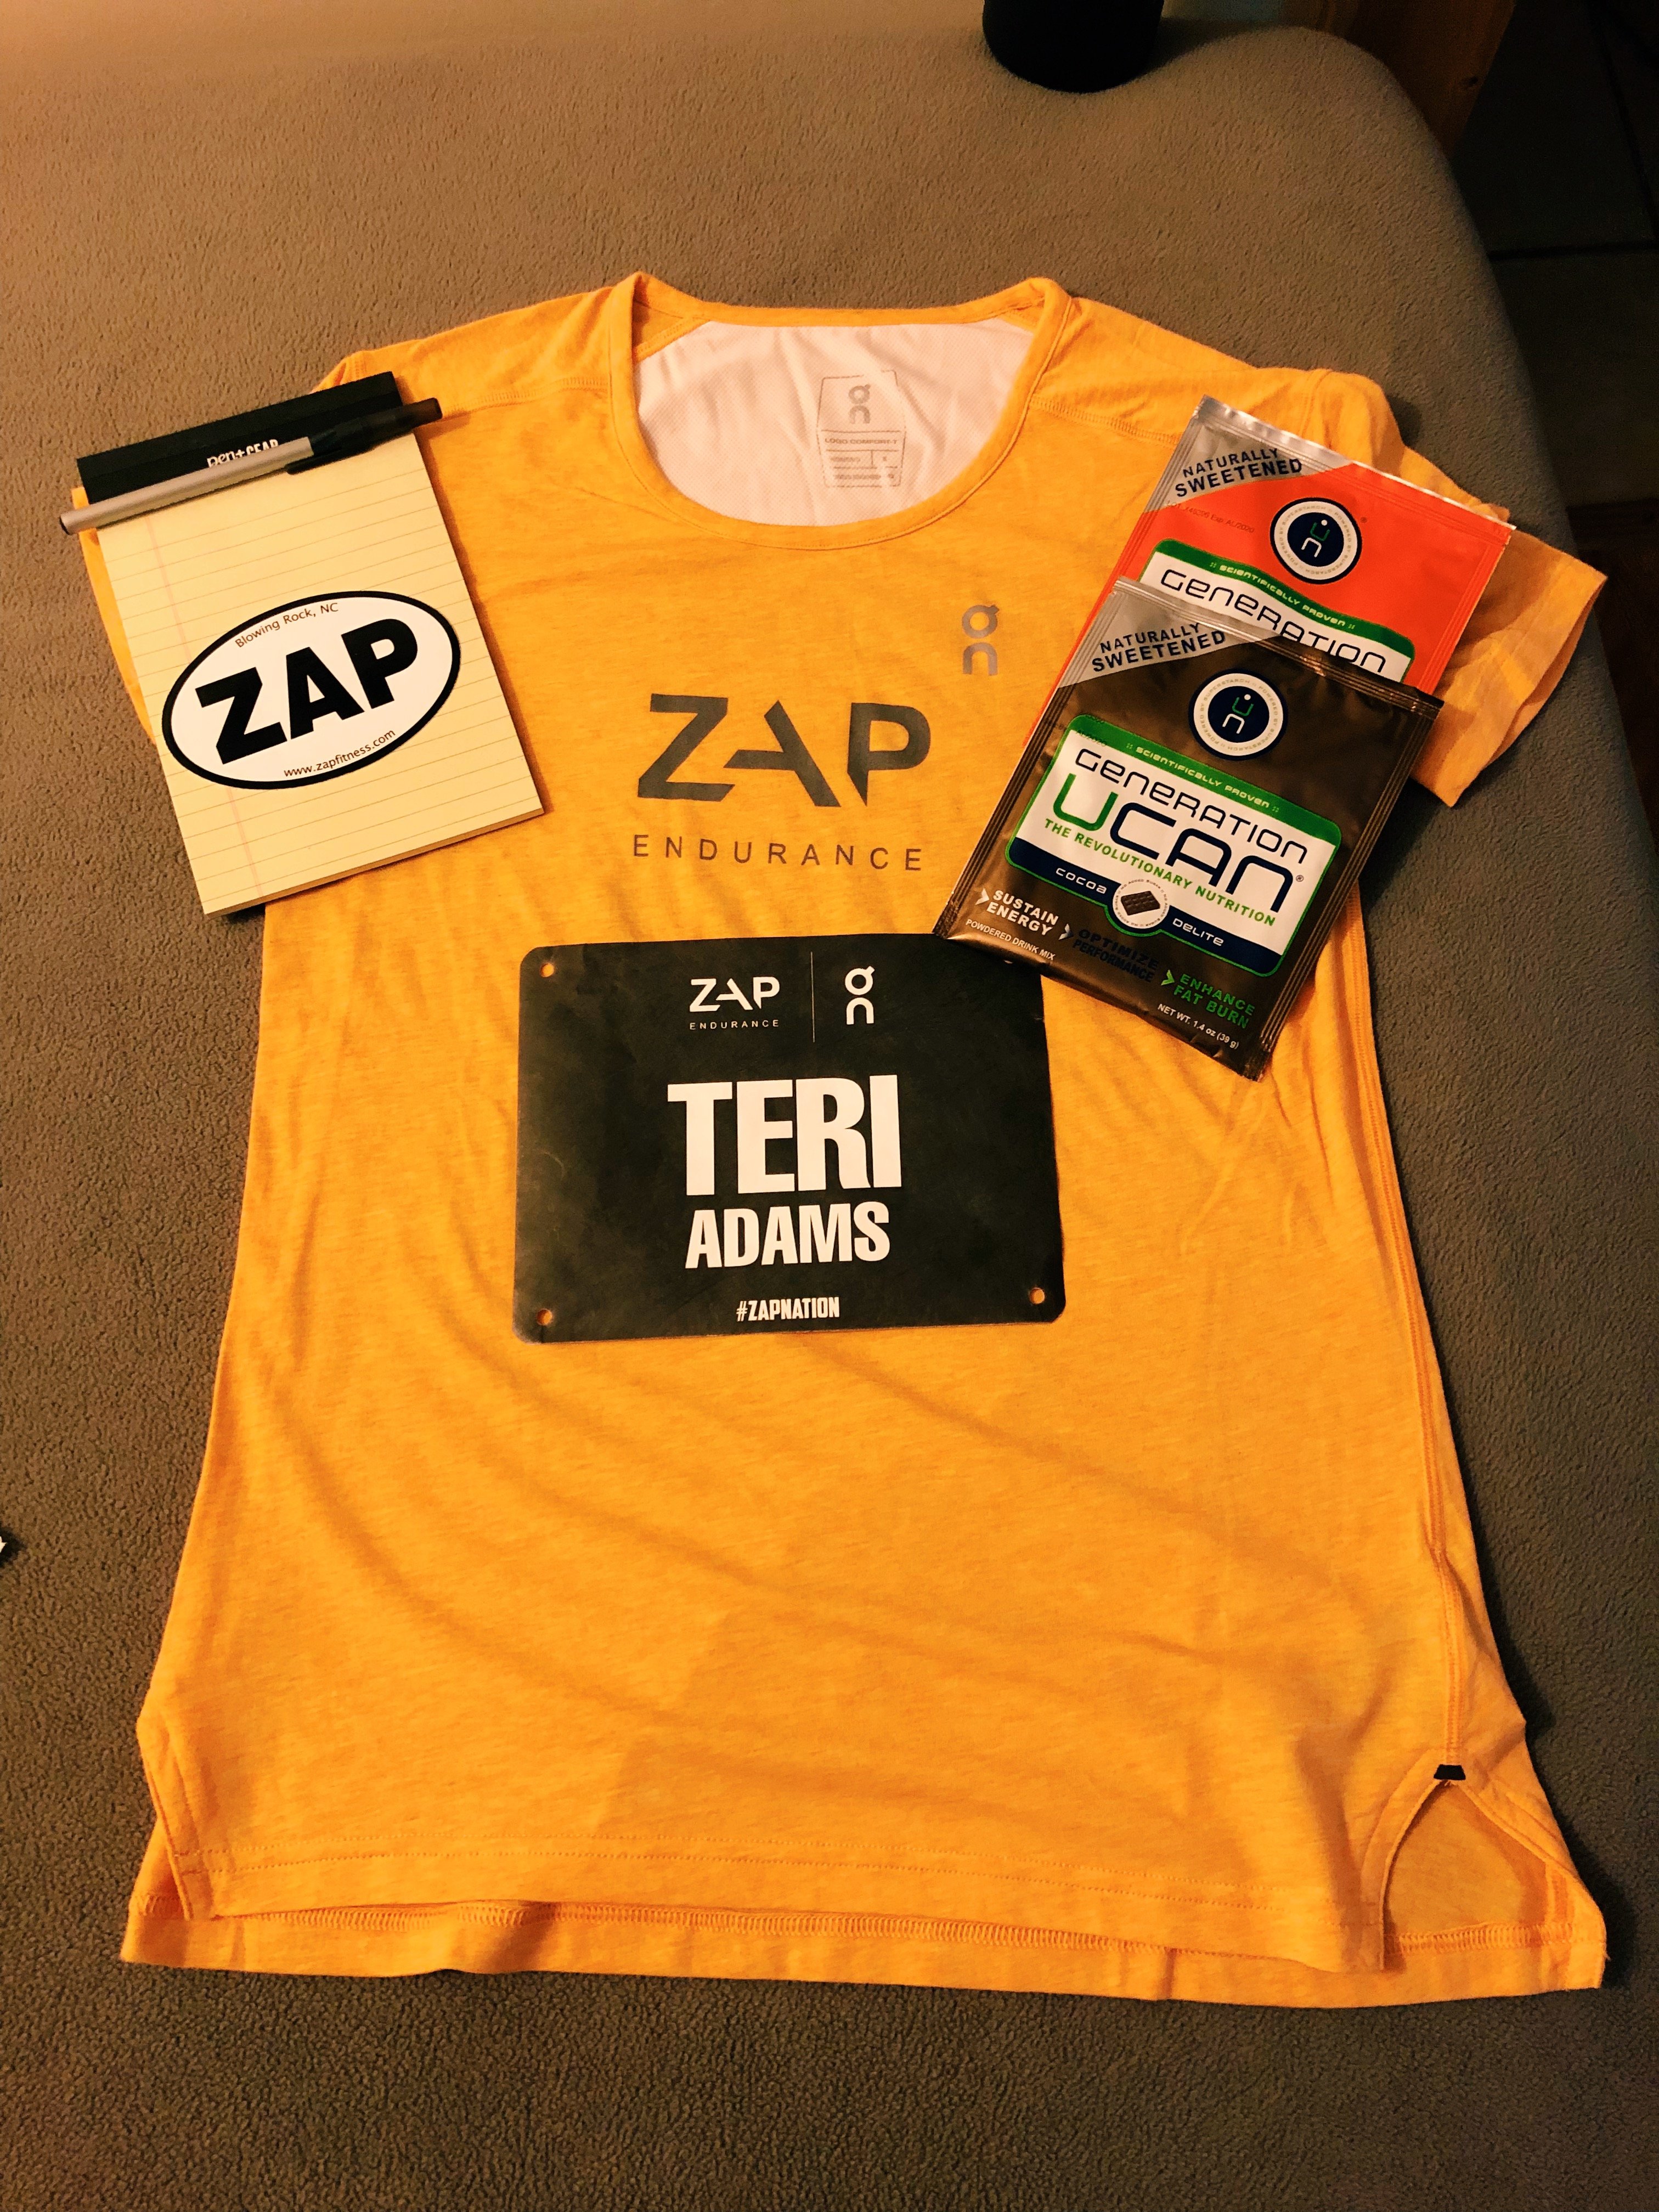 Zap Endurance running camp